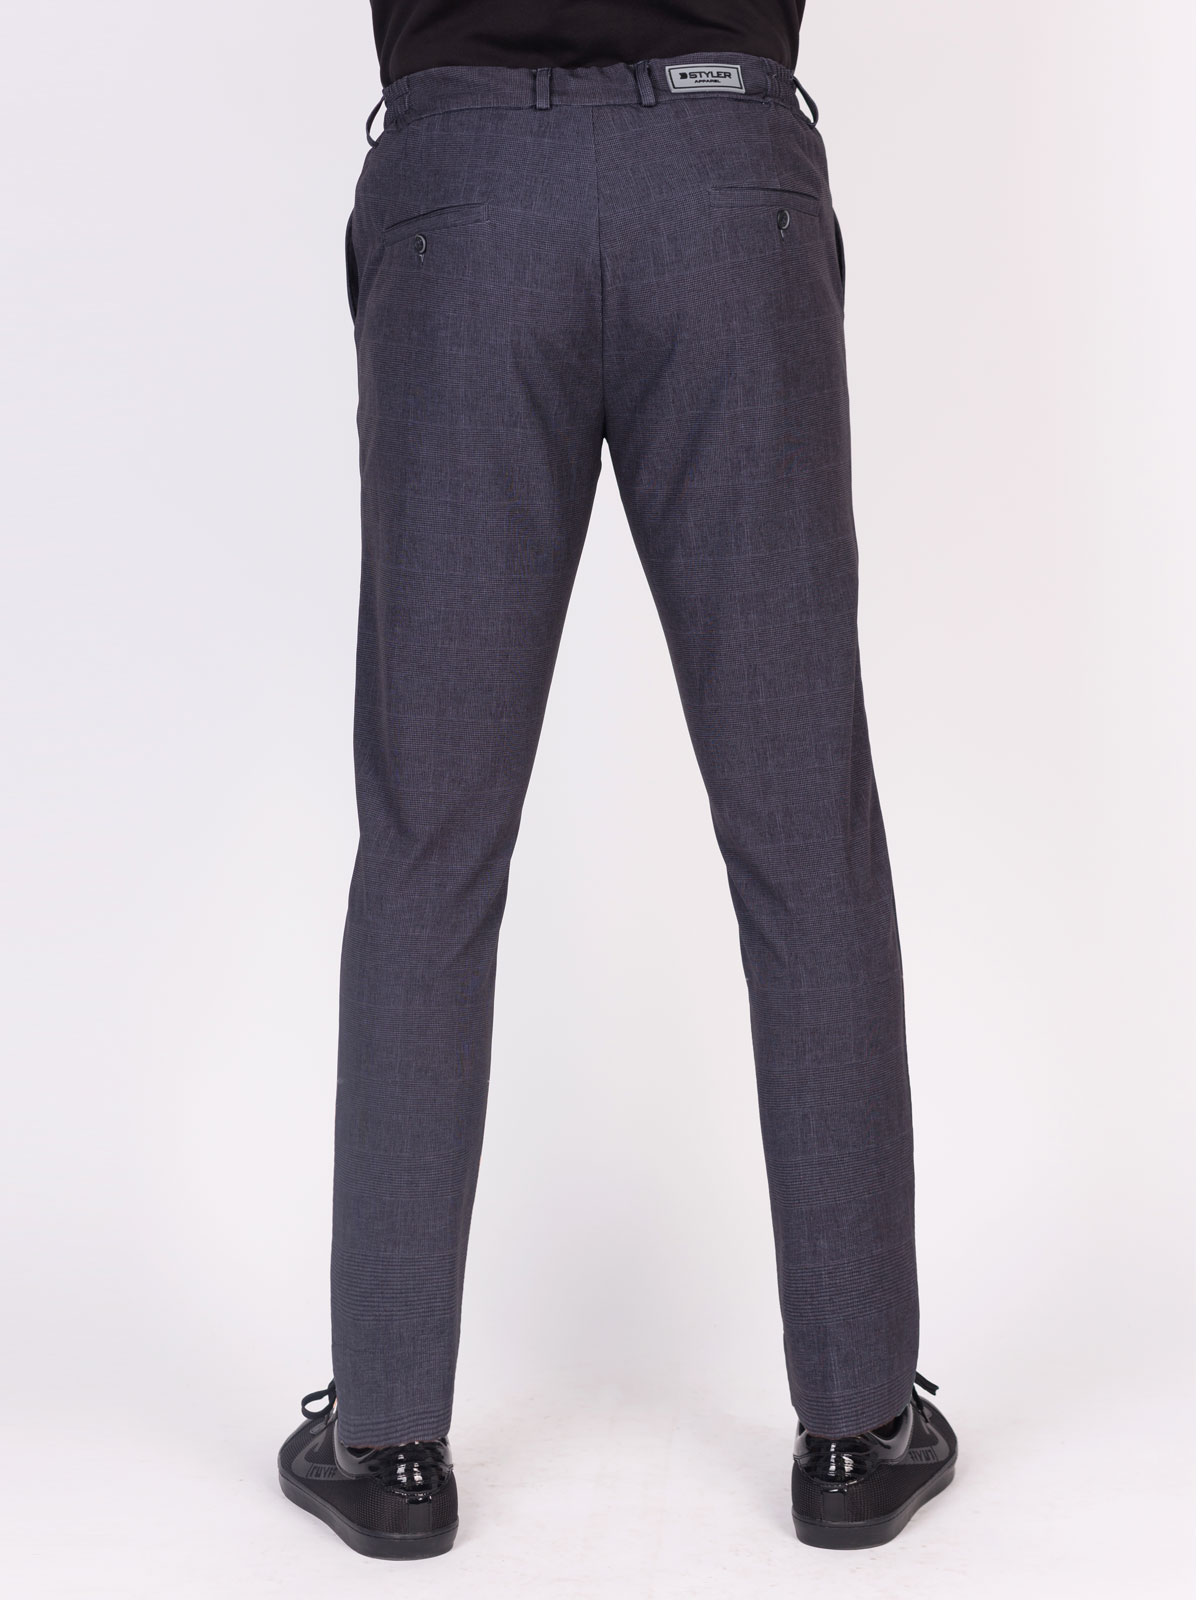 Ανδρικό παντελόνι σε σκούρο γκρι - 29007 € 55.12 img2